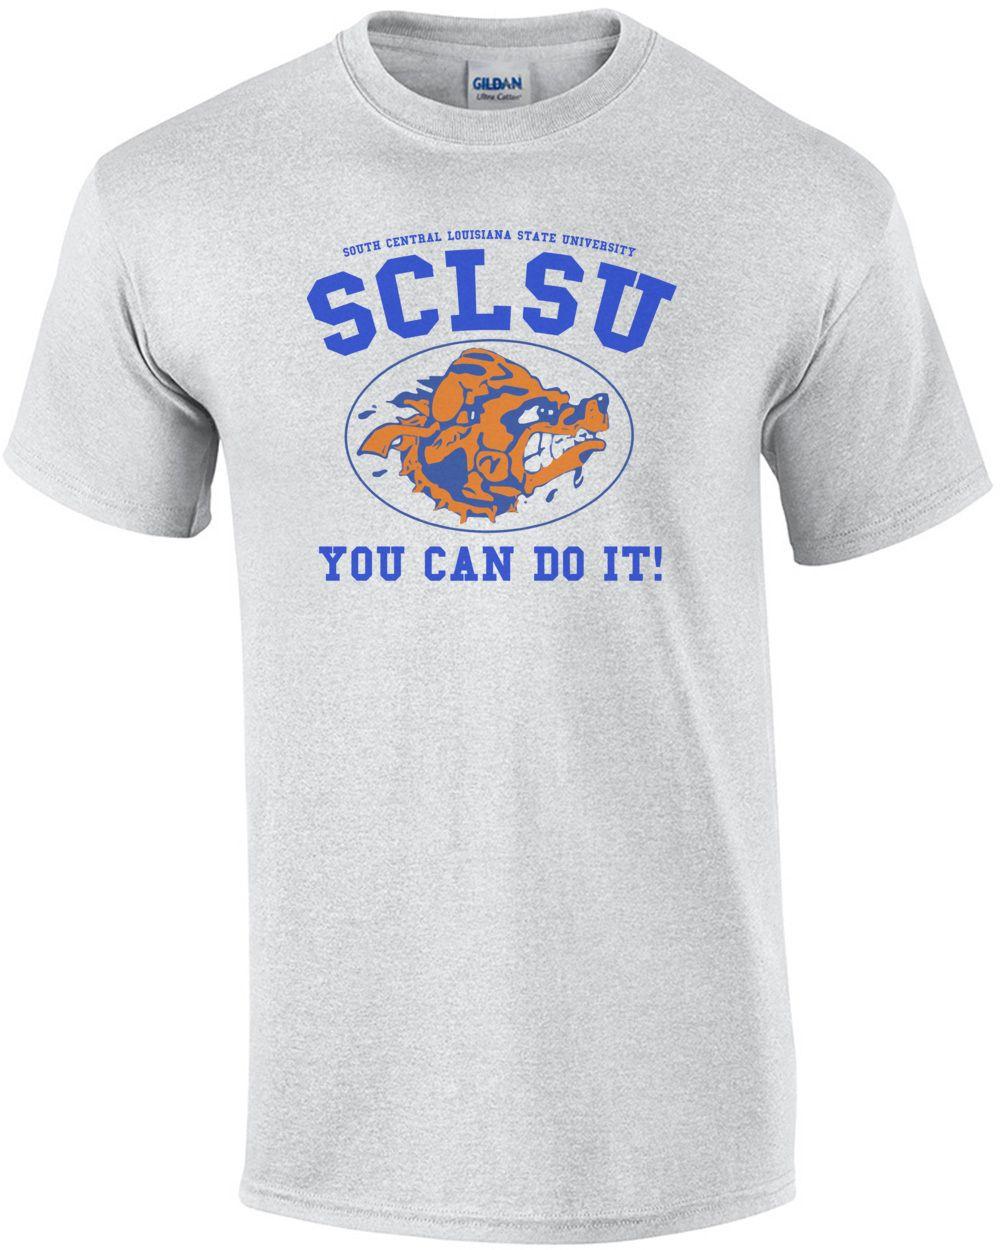 SCLSU Logo - SCLSU - You can do it! Waterboy T-Shirt - 90's T-Shirt